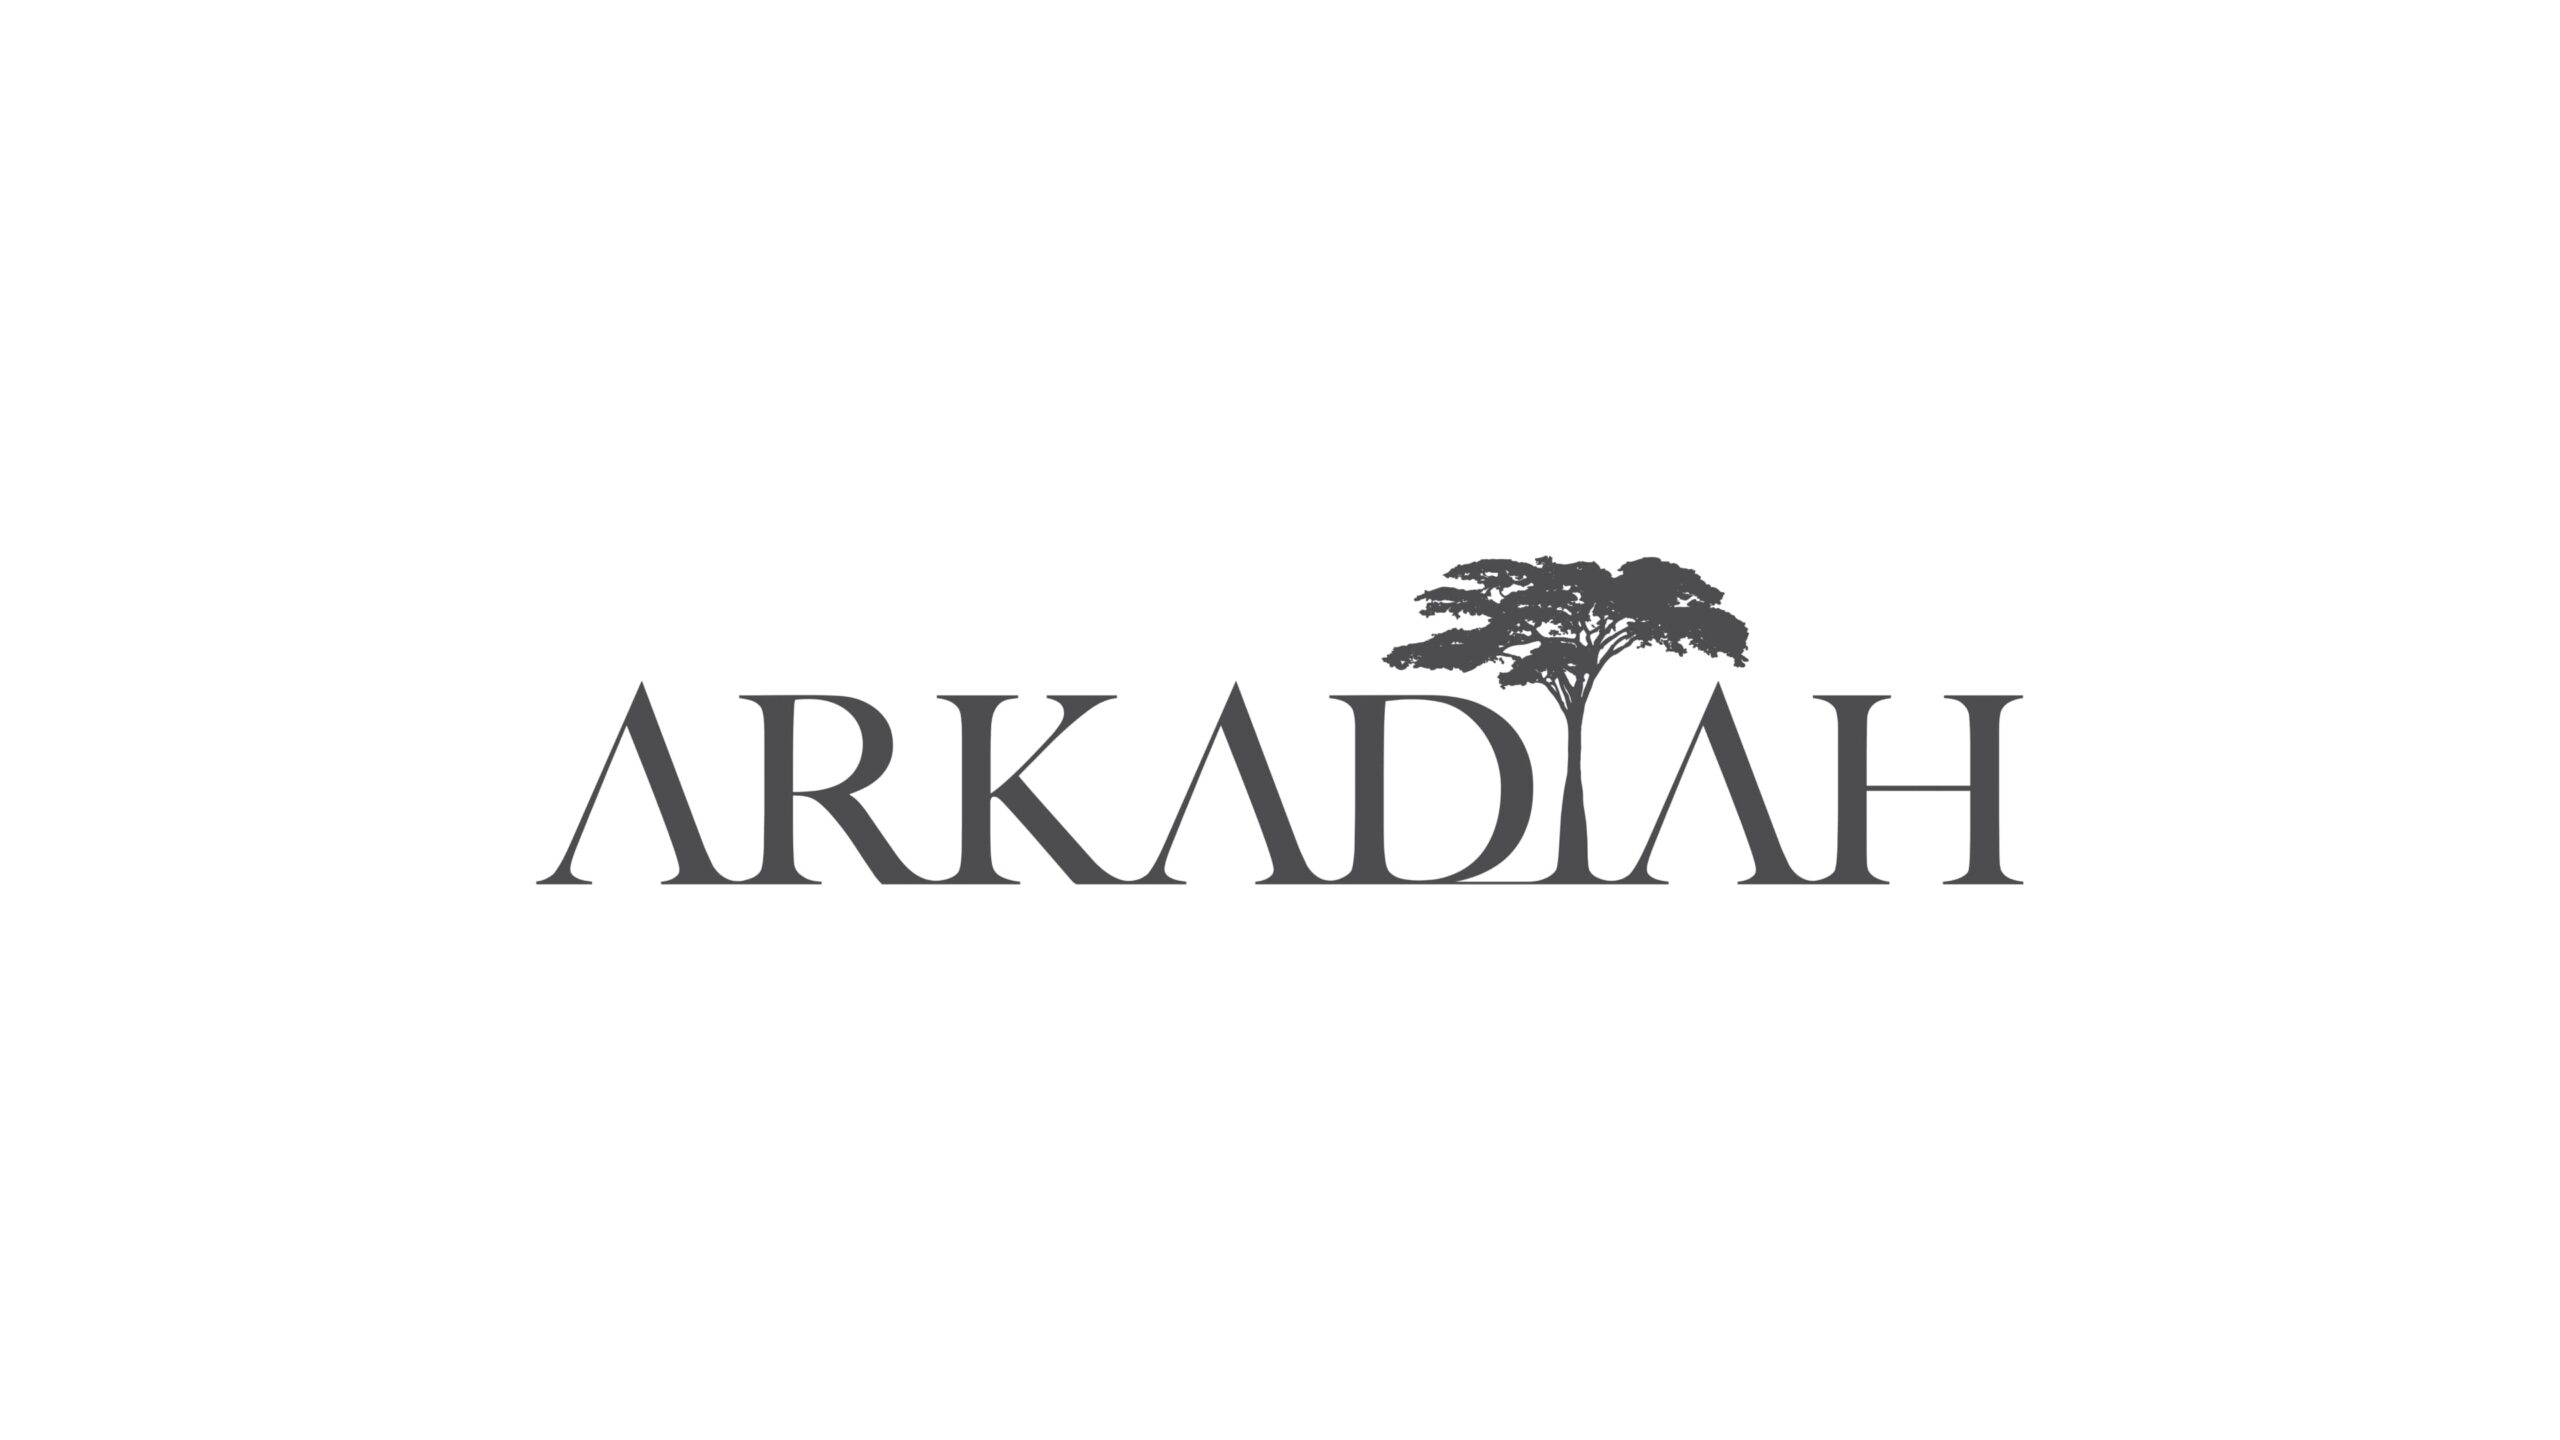 クライメートテック企業Arkadiah がシードラウンドにて資金調達を実施